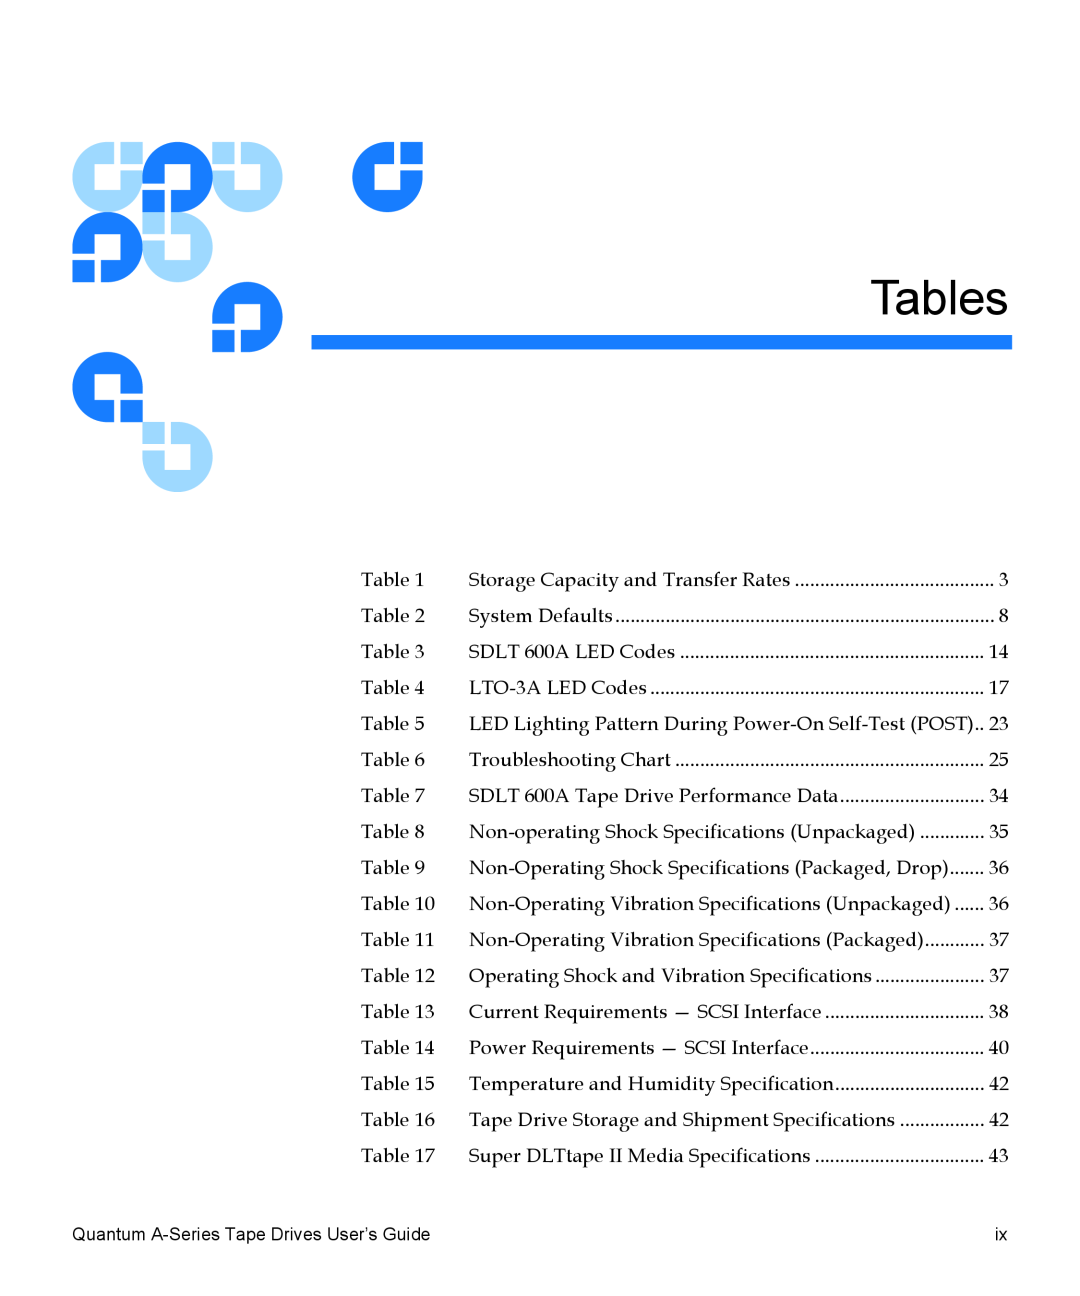 Quantum A-Series manual Tables 